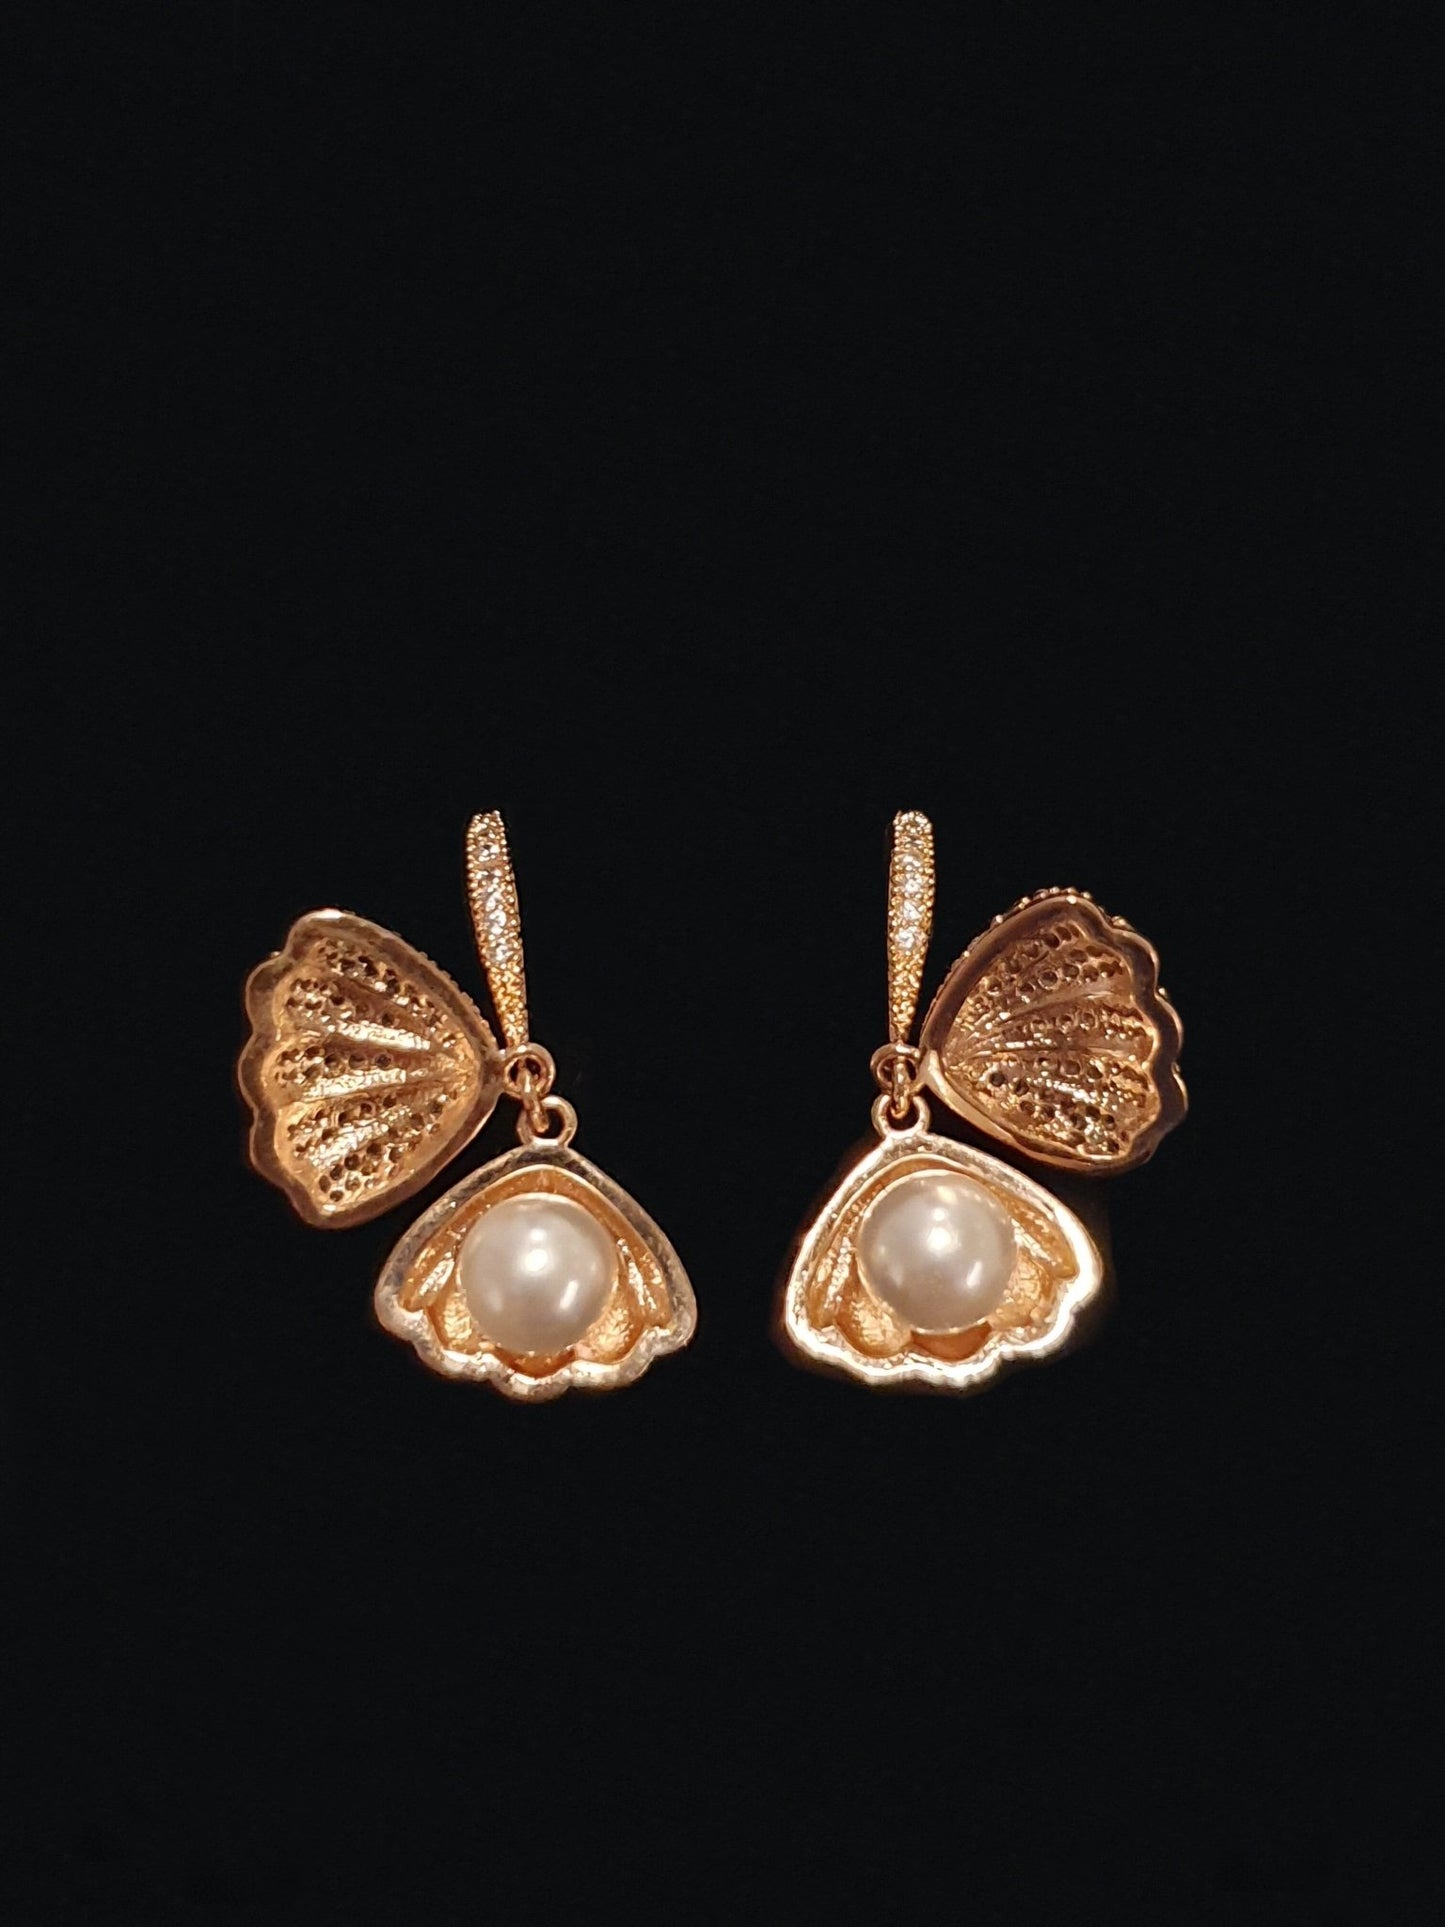 Coppia di pendenti “conchiglia” rose gold con pietre e perla - 333HOPE333